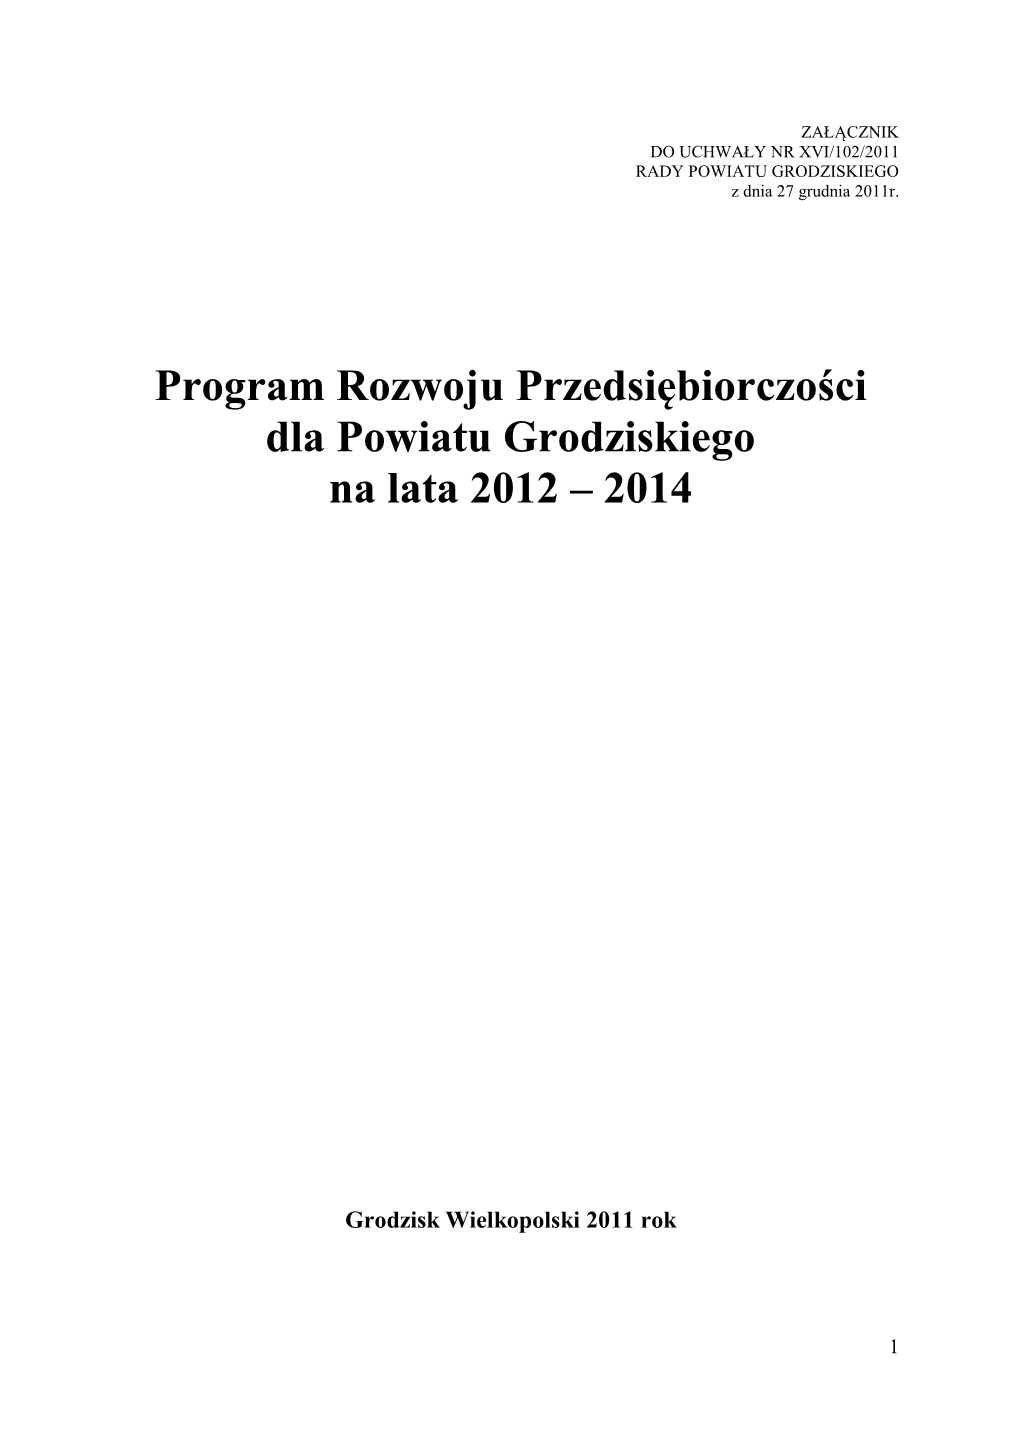 Program Rozwoju Przedsiębiorczości Dla Powiatu Grodziskiego Na Lata 2012 – 2014